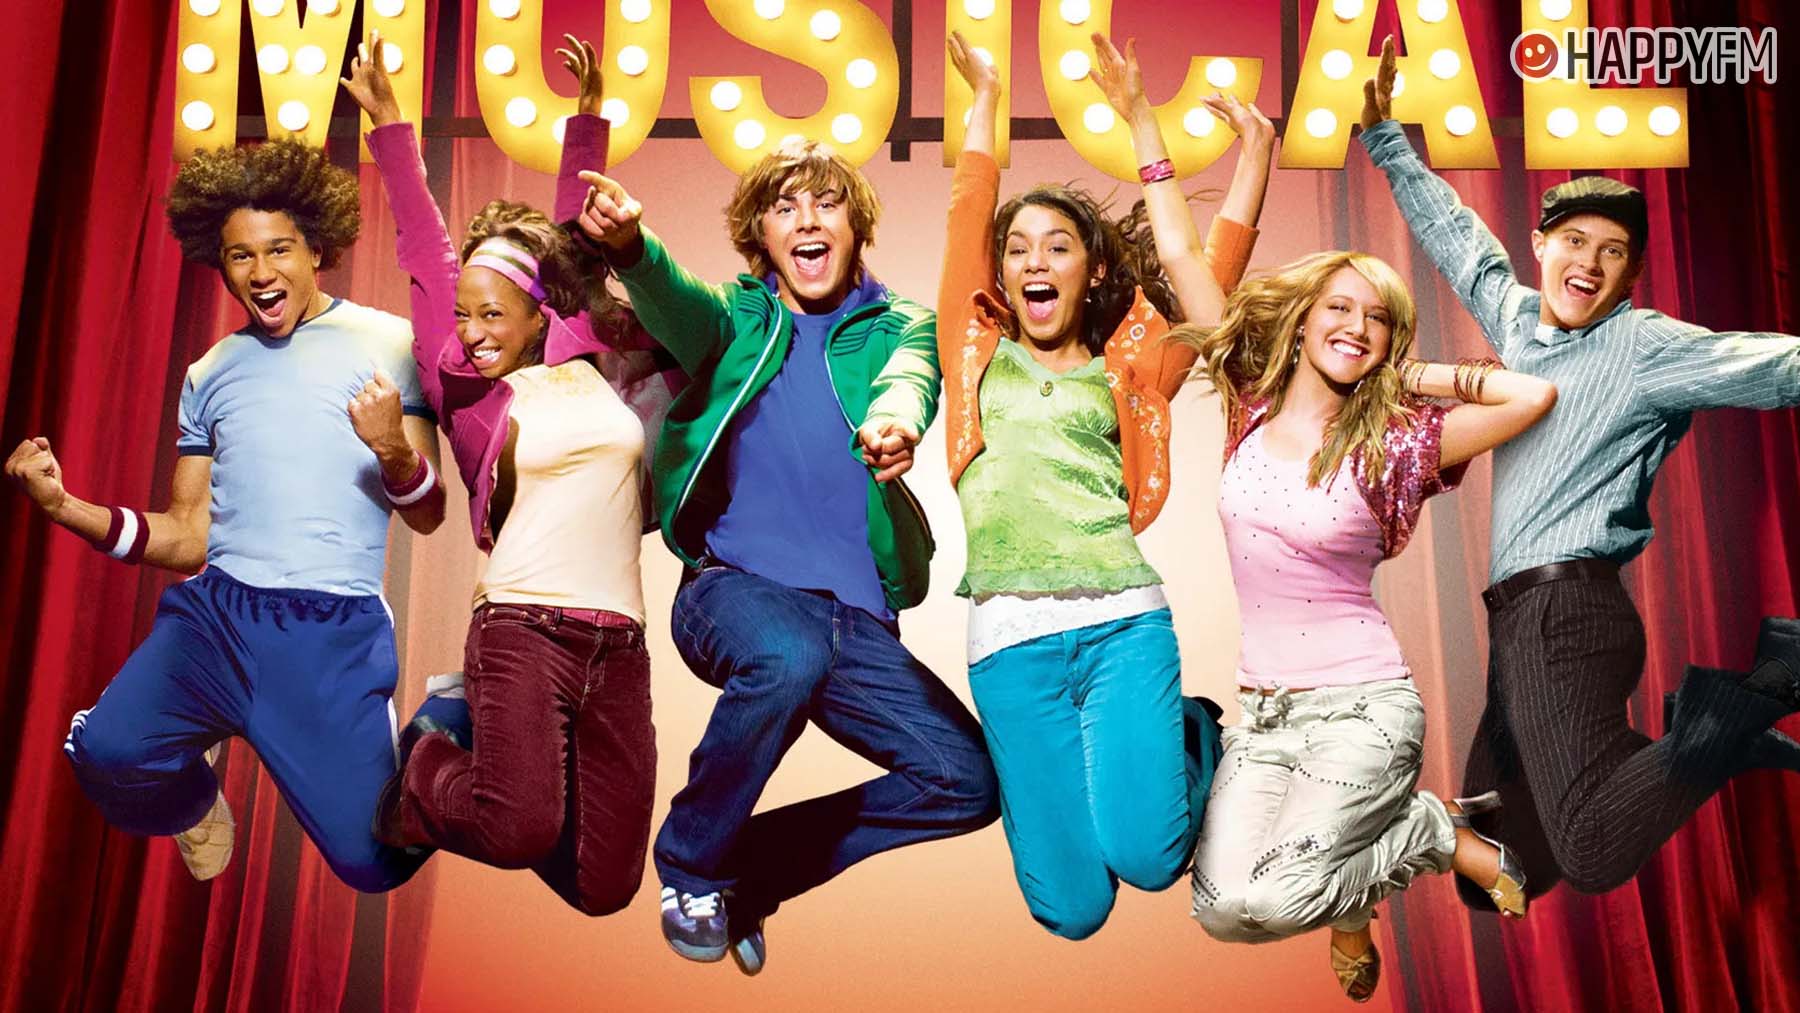 Другой мюзикл. Зак Эфрон мюзикл Дисней. High School Musical, 2006.